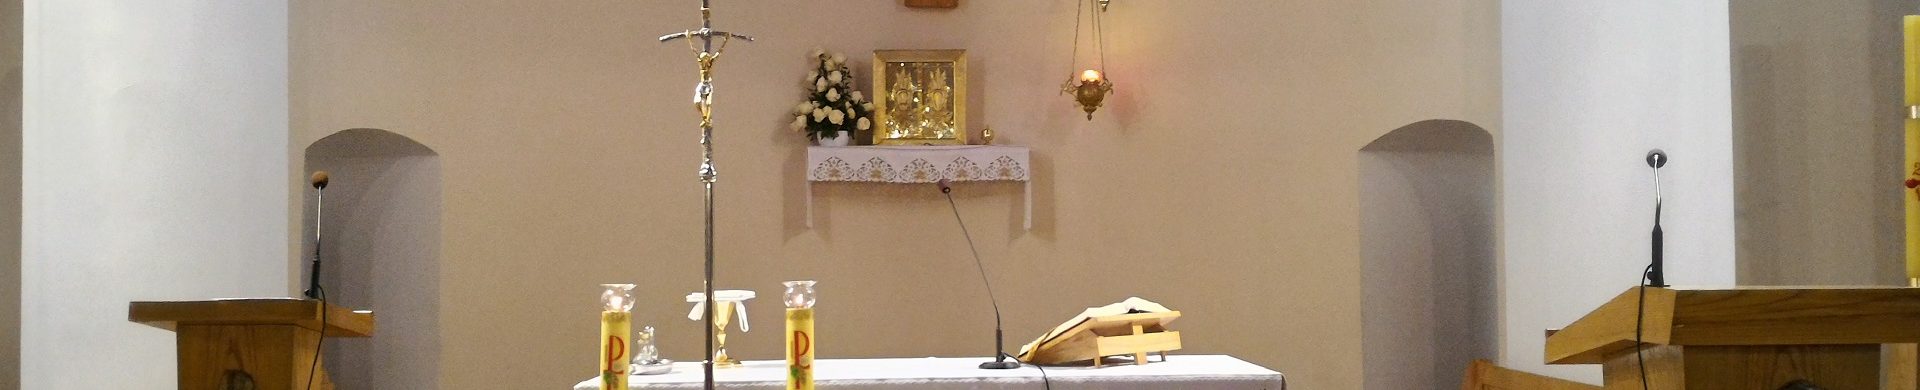 Poświęcenie nowego ornatu z wizerunkiem św. O. Pio